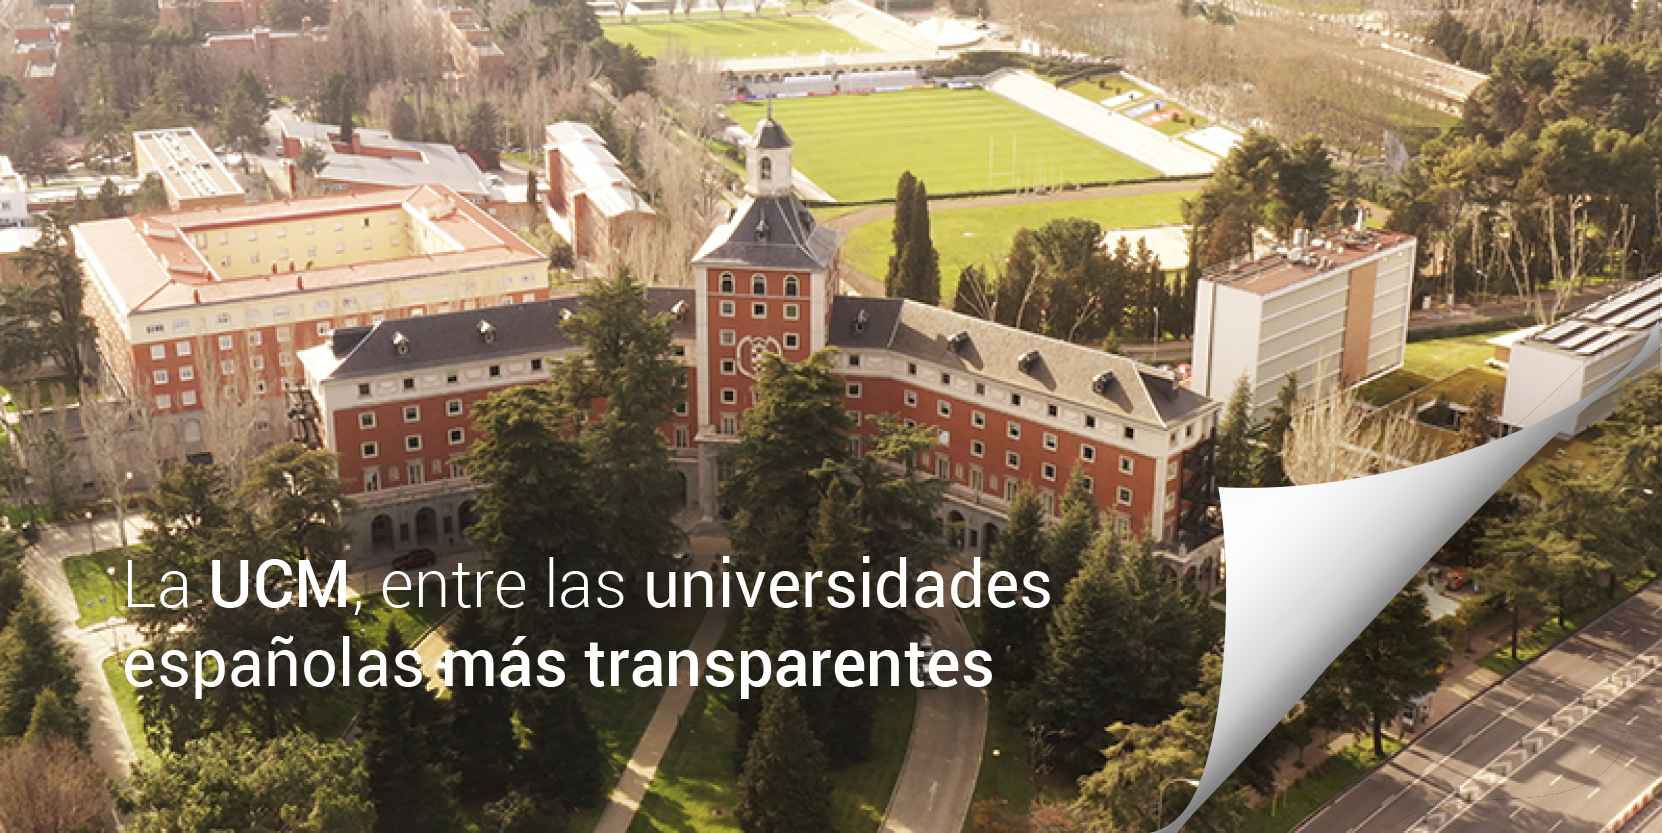 La UCM, entre las universidades españolas más transparentes, 6ª posición de un total de 79 universidades, según la plataforma social Dyntra